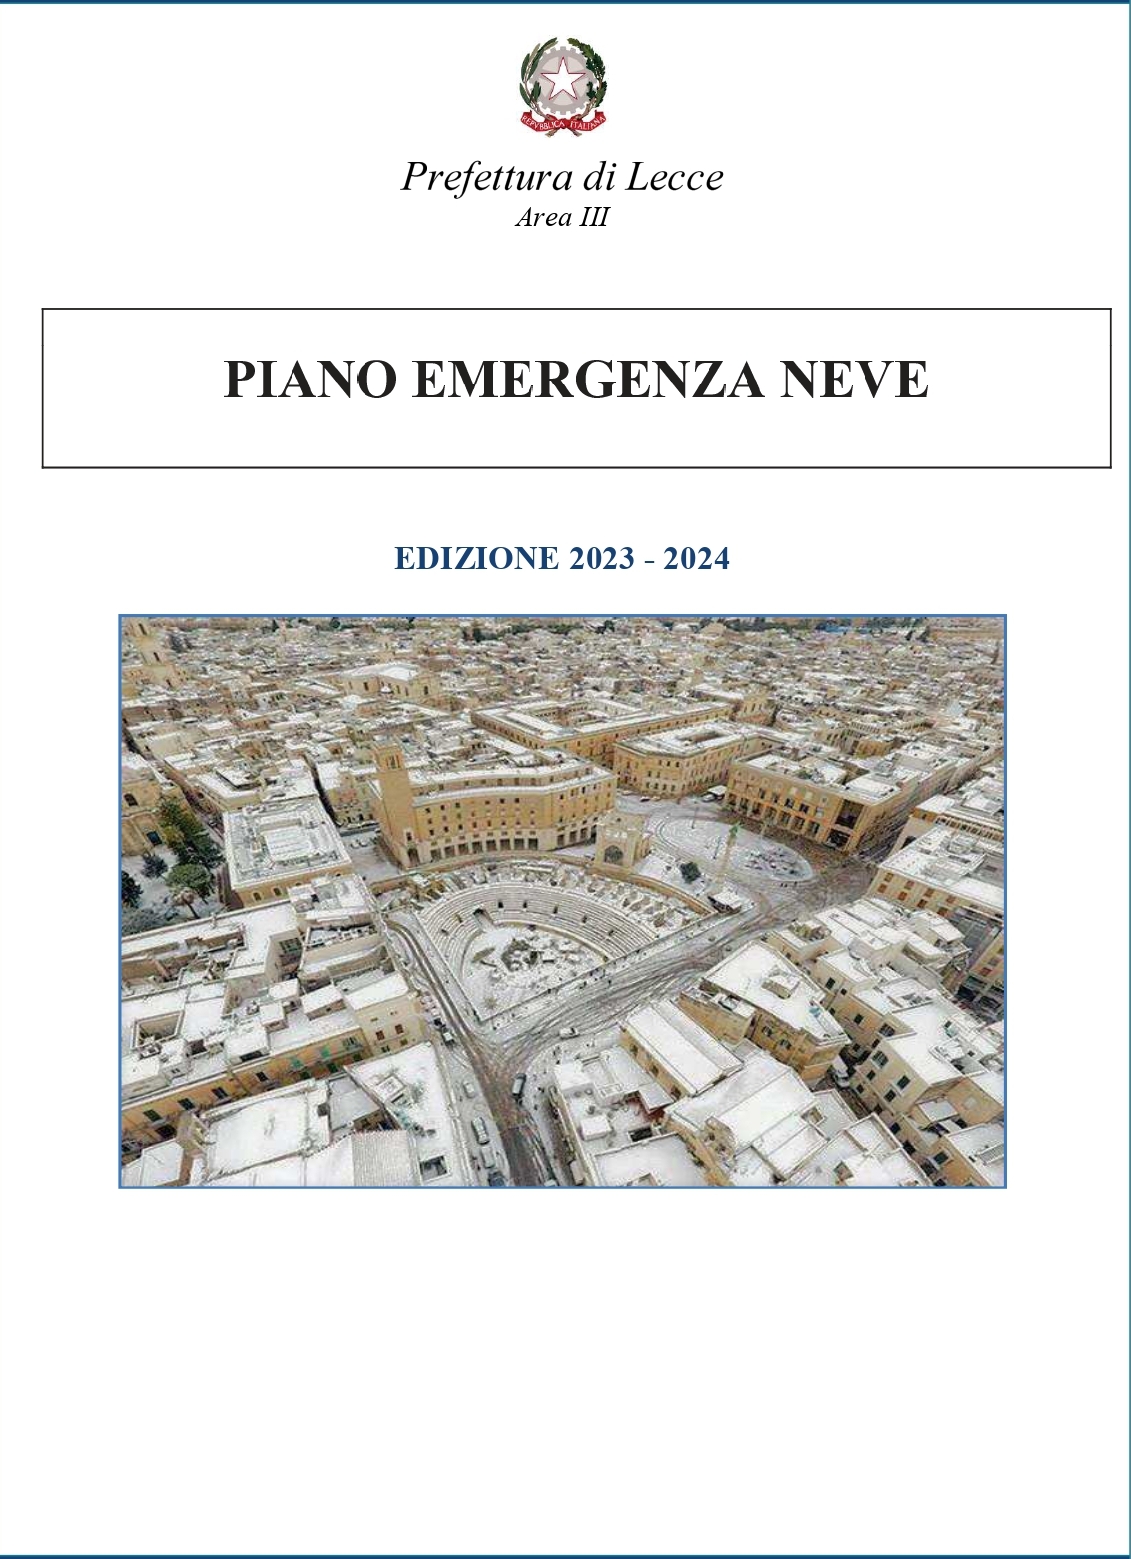 PIANO EMERGENZA NEVE: EDIZIONE 2023-2024